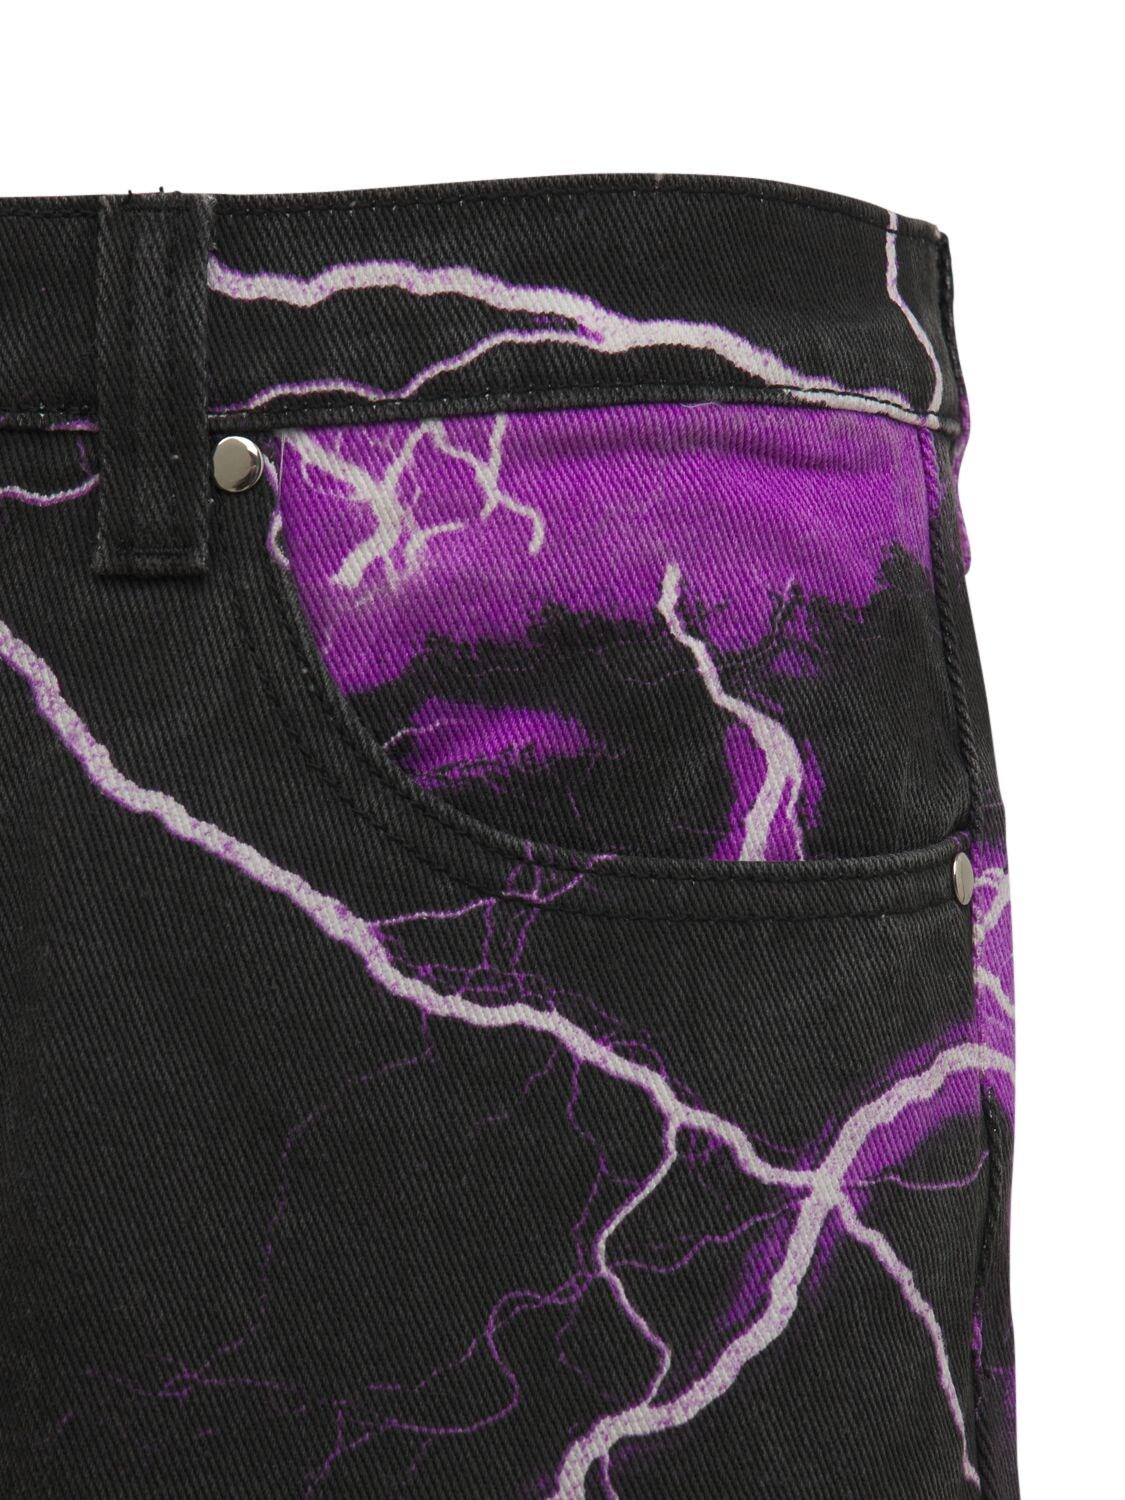 Jaded London Lightning Printed Skater Jeans in Black for Men